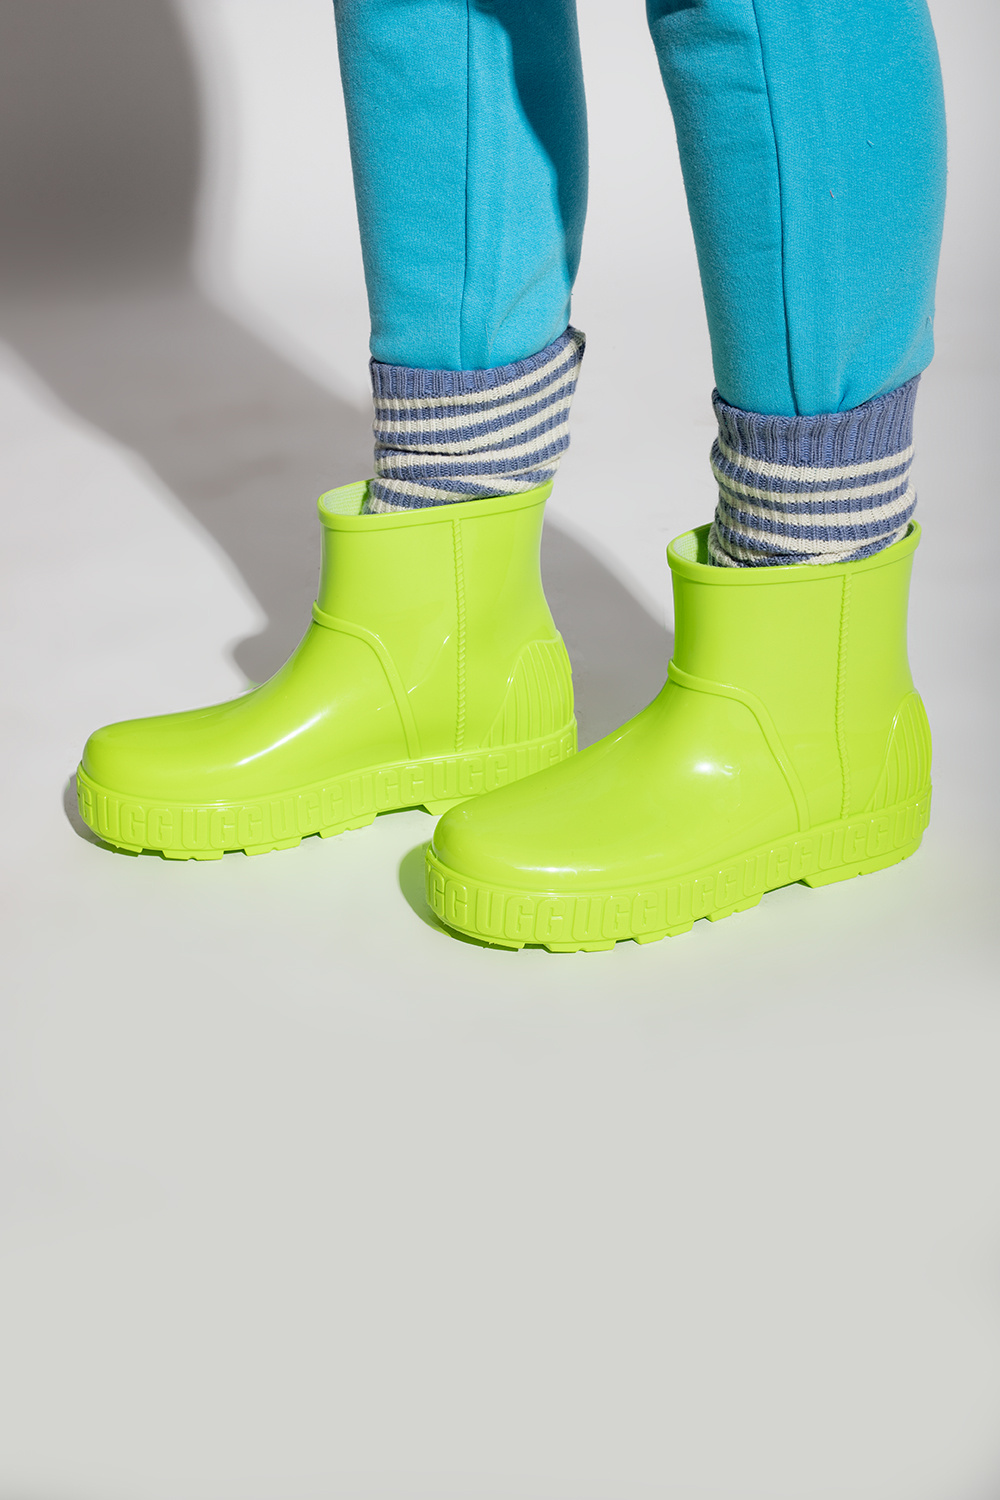 Women's Shoes | Short UGG 'W Drizlita' rain boots | Short UGG